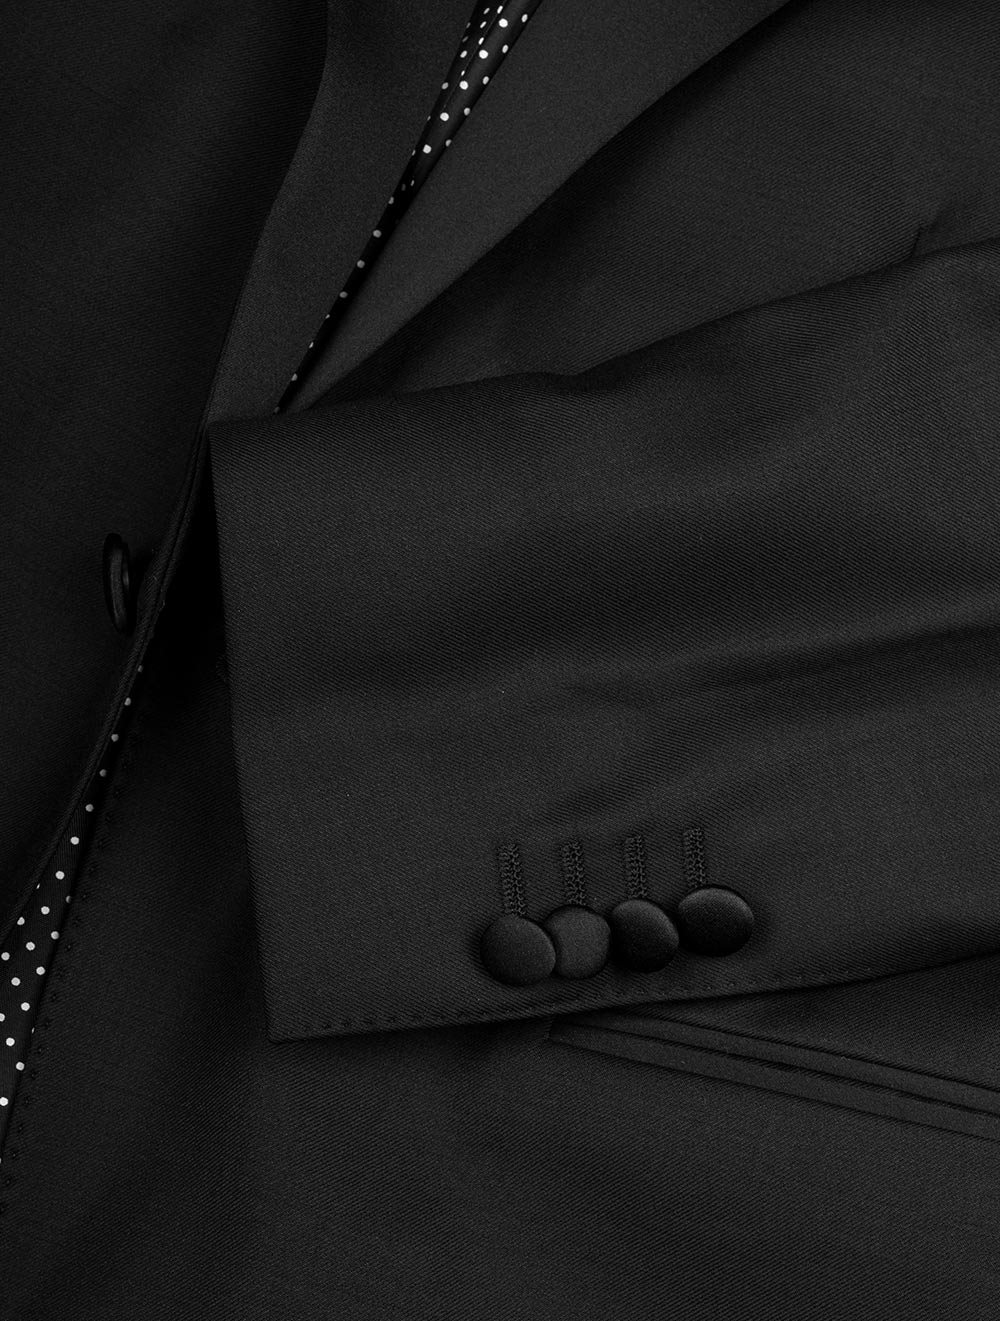 Louis Copeland Dress Suit Tuxedo Black 2 Piece 1 Button Single Peaked Lapel 5